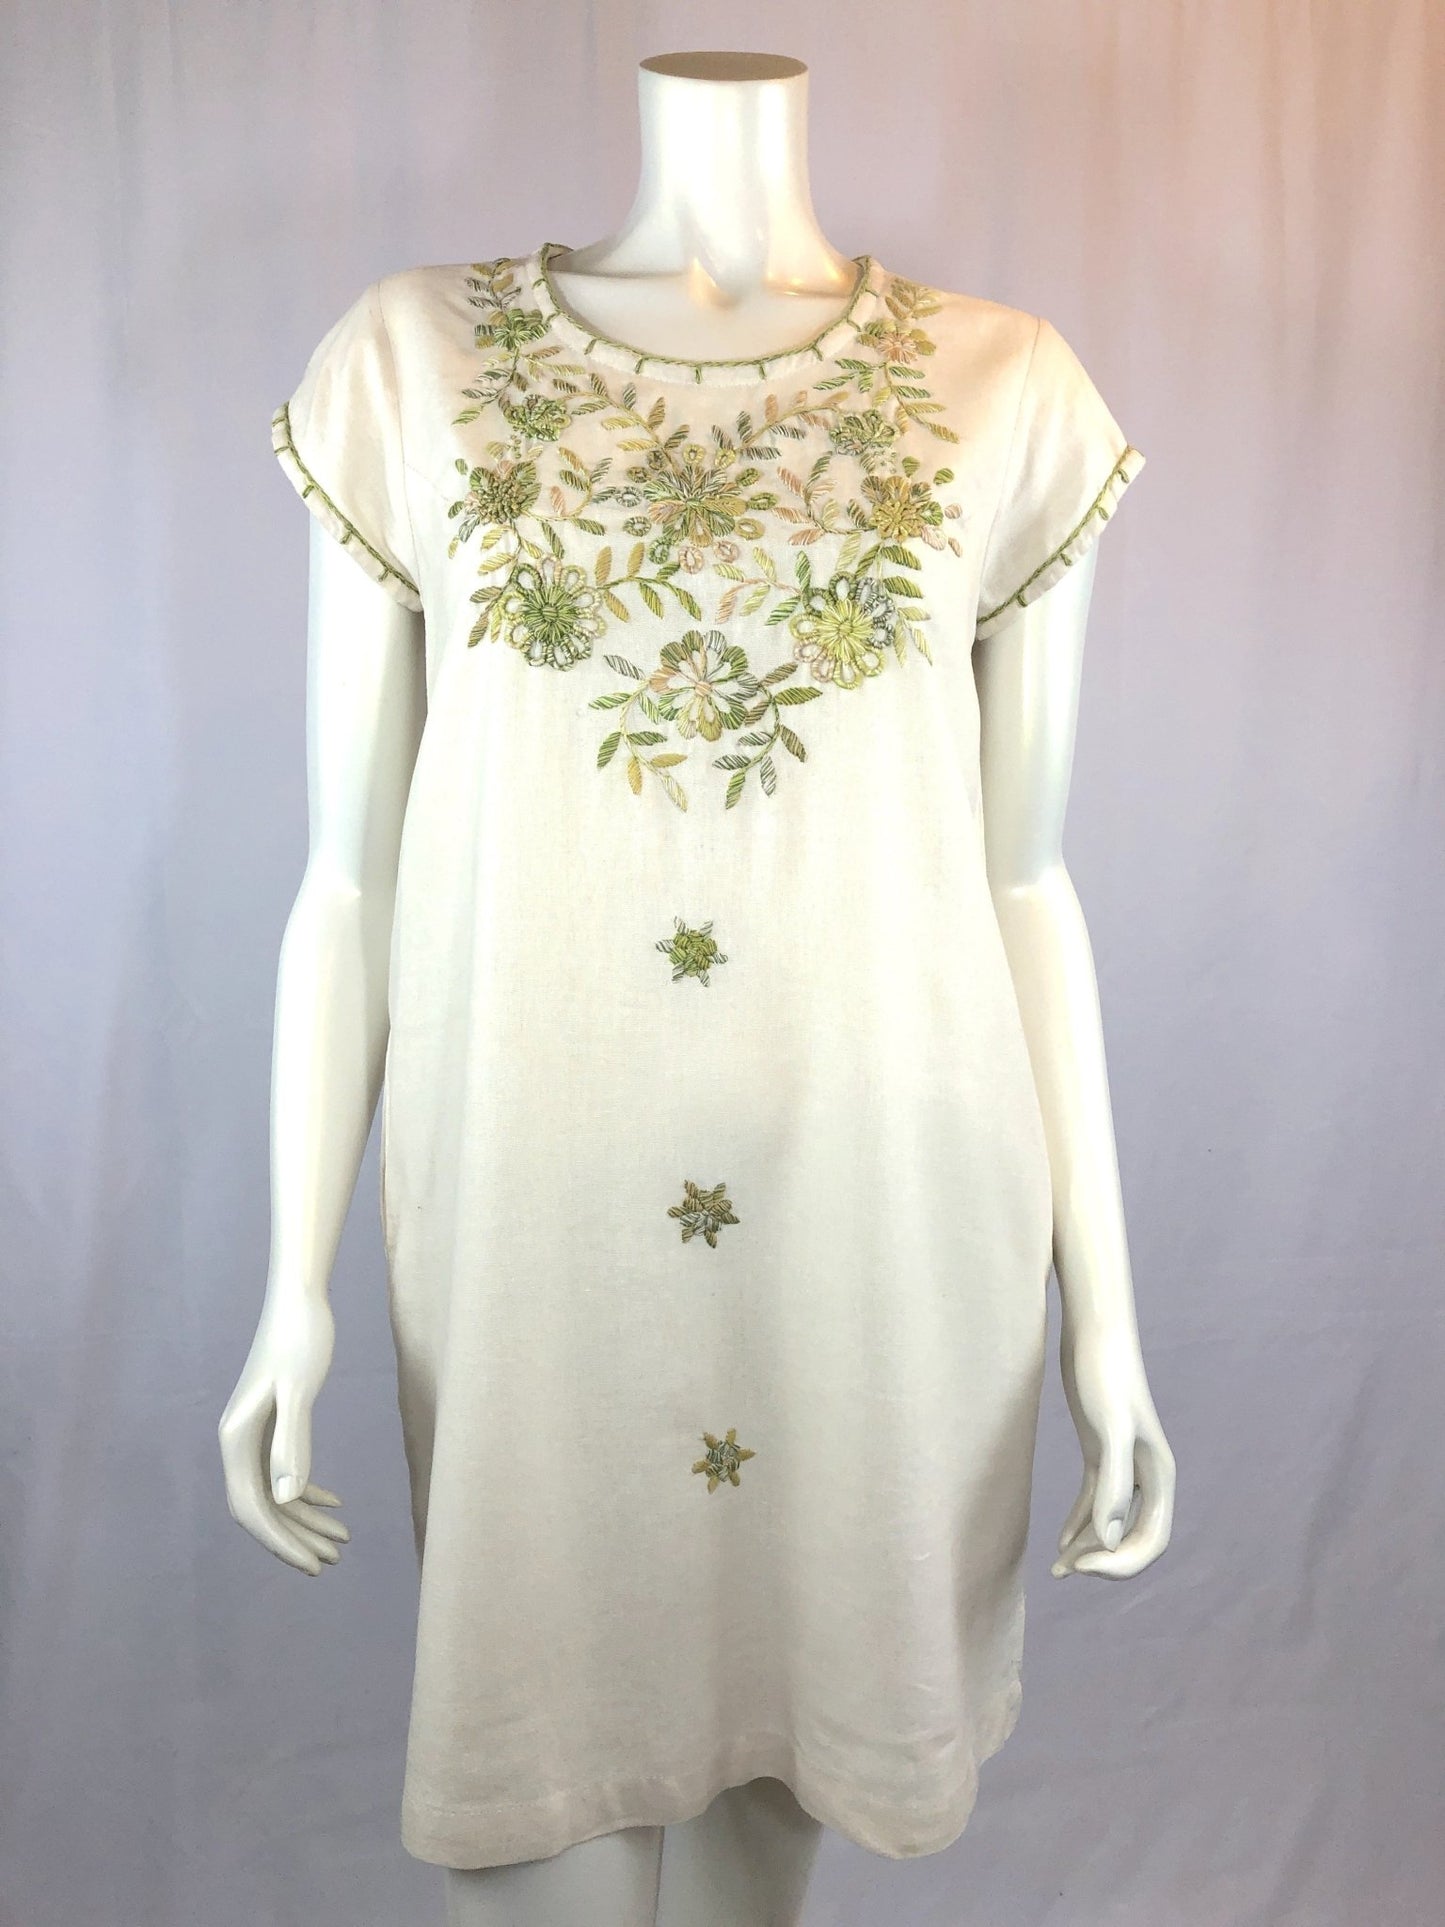 Belen - ivory tunic dress - Abrazo Style Shop